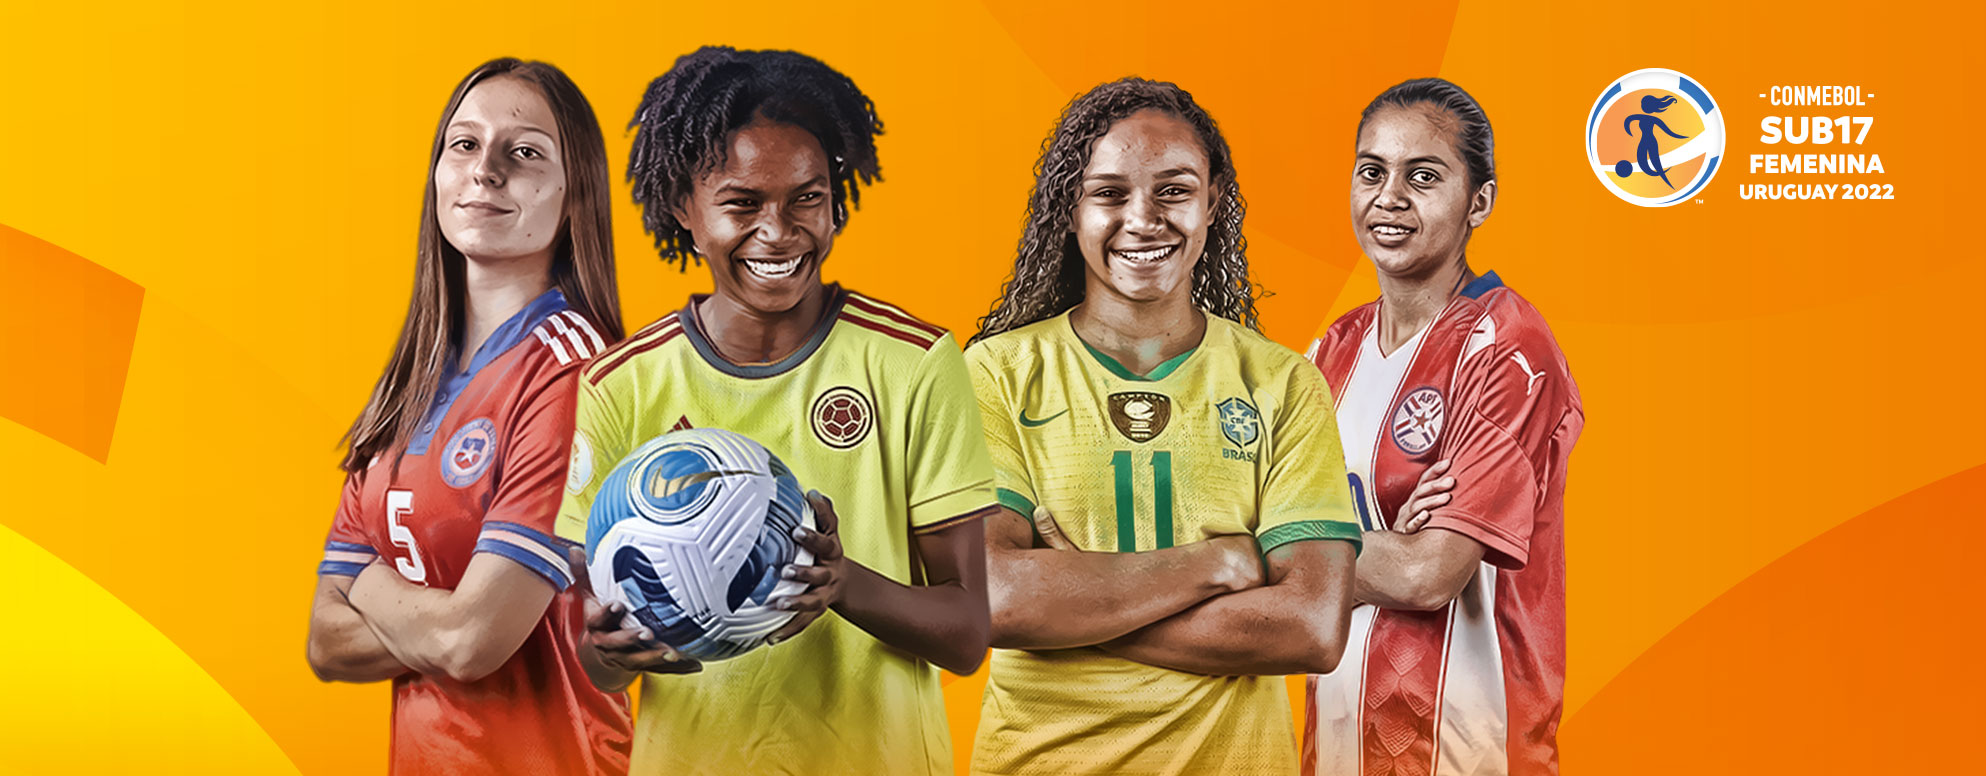 Los cruces de la Fase Final de la CONMEBOL Sub 17 Femenina 2022 - CONMEBOL